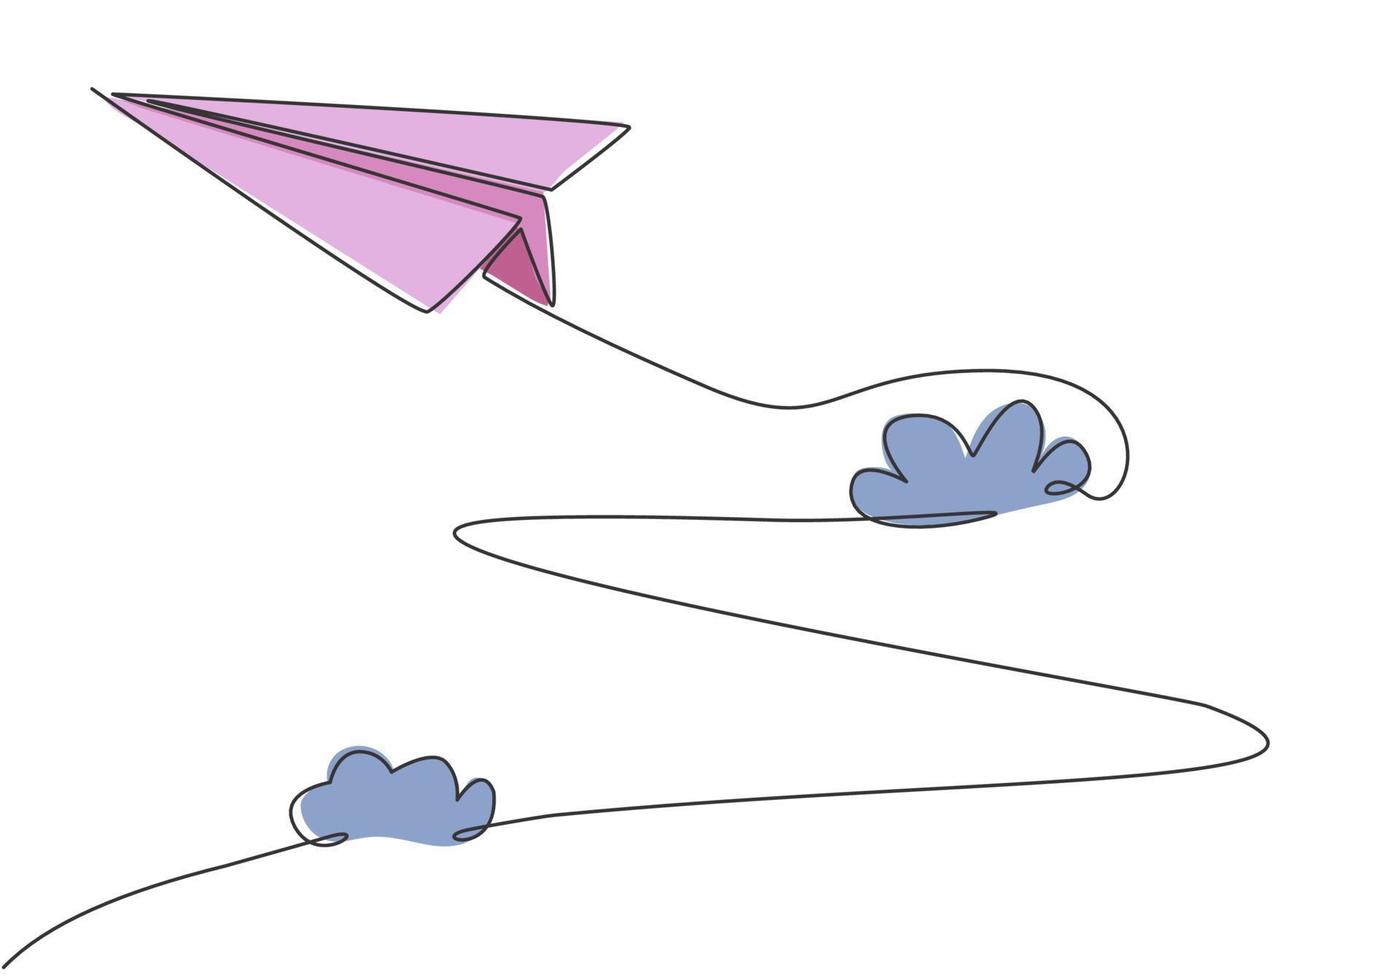 enkele doorlopende lijntekening van papieren vliegtuigje dat hoog door de wolken vliegt op een witte achtergrond. papieren origami kinderspeelgoed. minimalisme concept dynamische één lijn tekenen grafisch ontwerp vectorillustratie vector